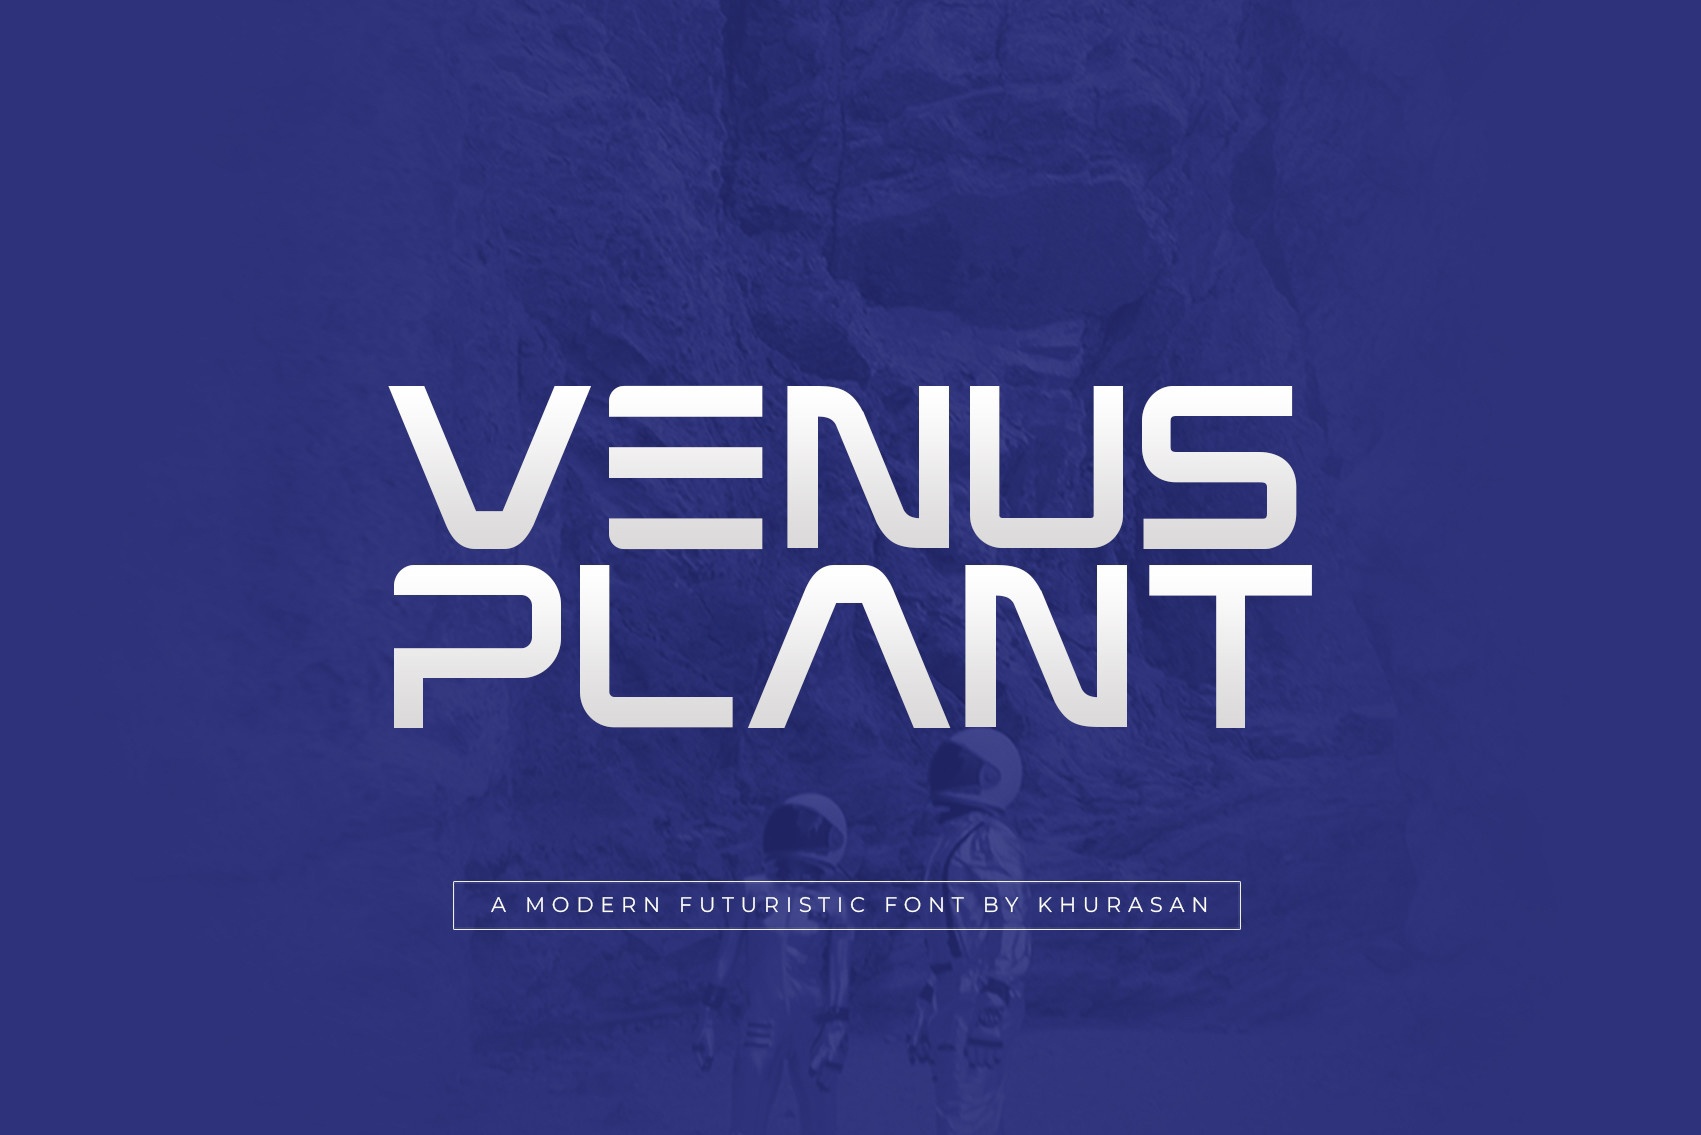 Ejemplo de fuente Venus Plant Regular